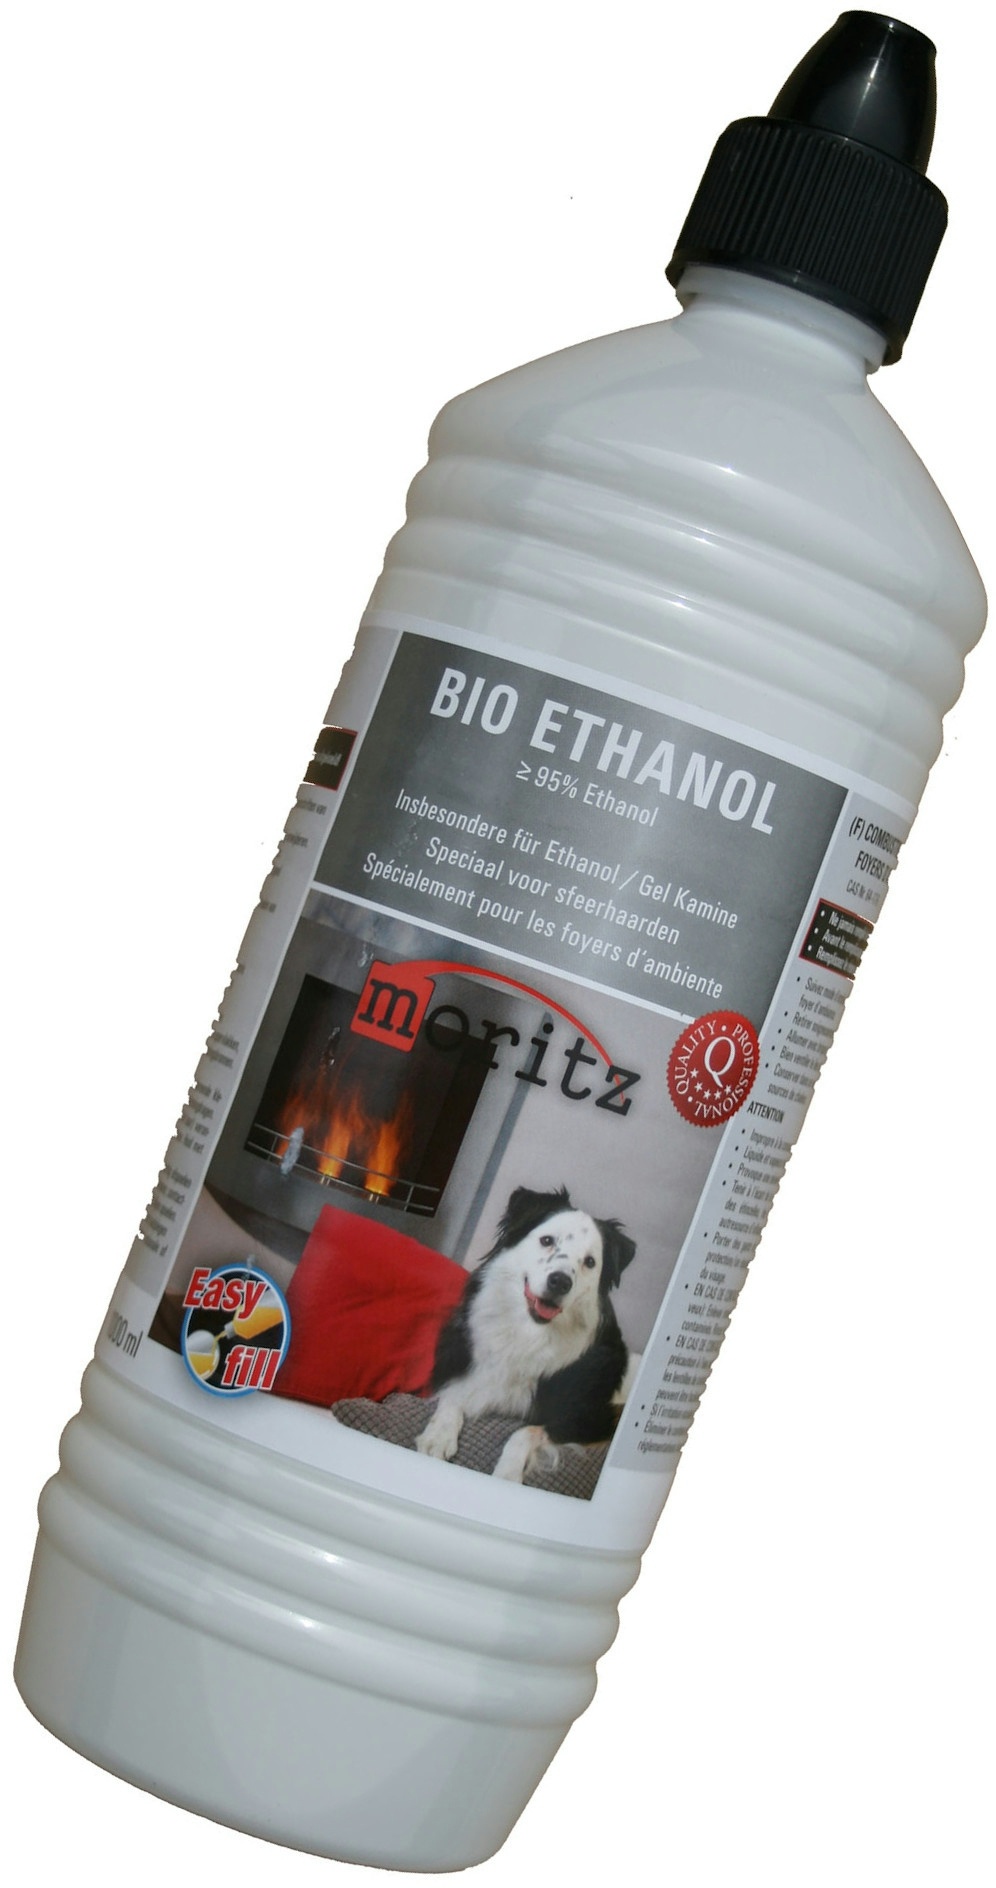 1 L Moritz Bio Ethanol >95 % für Ethanolkamine Gelkamine Rückstands Verbrennen